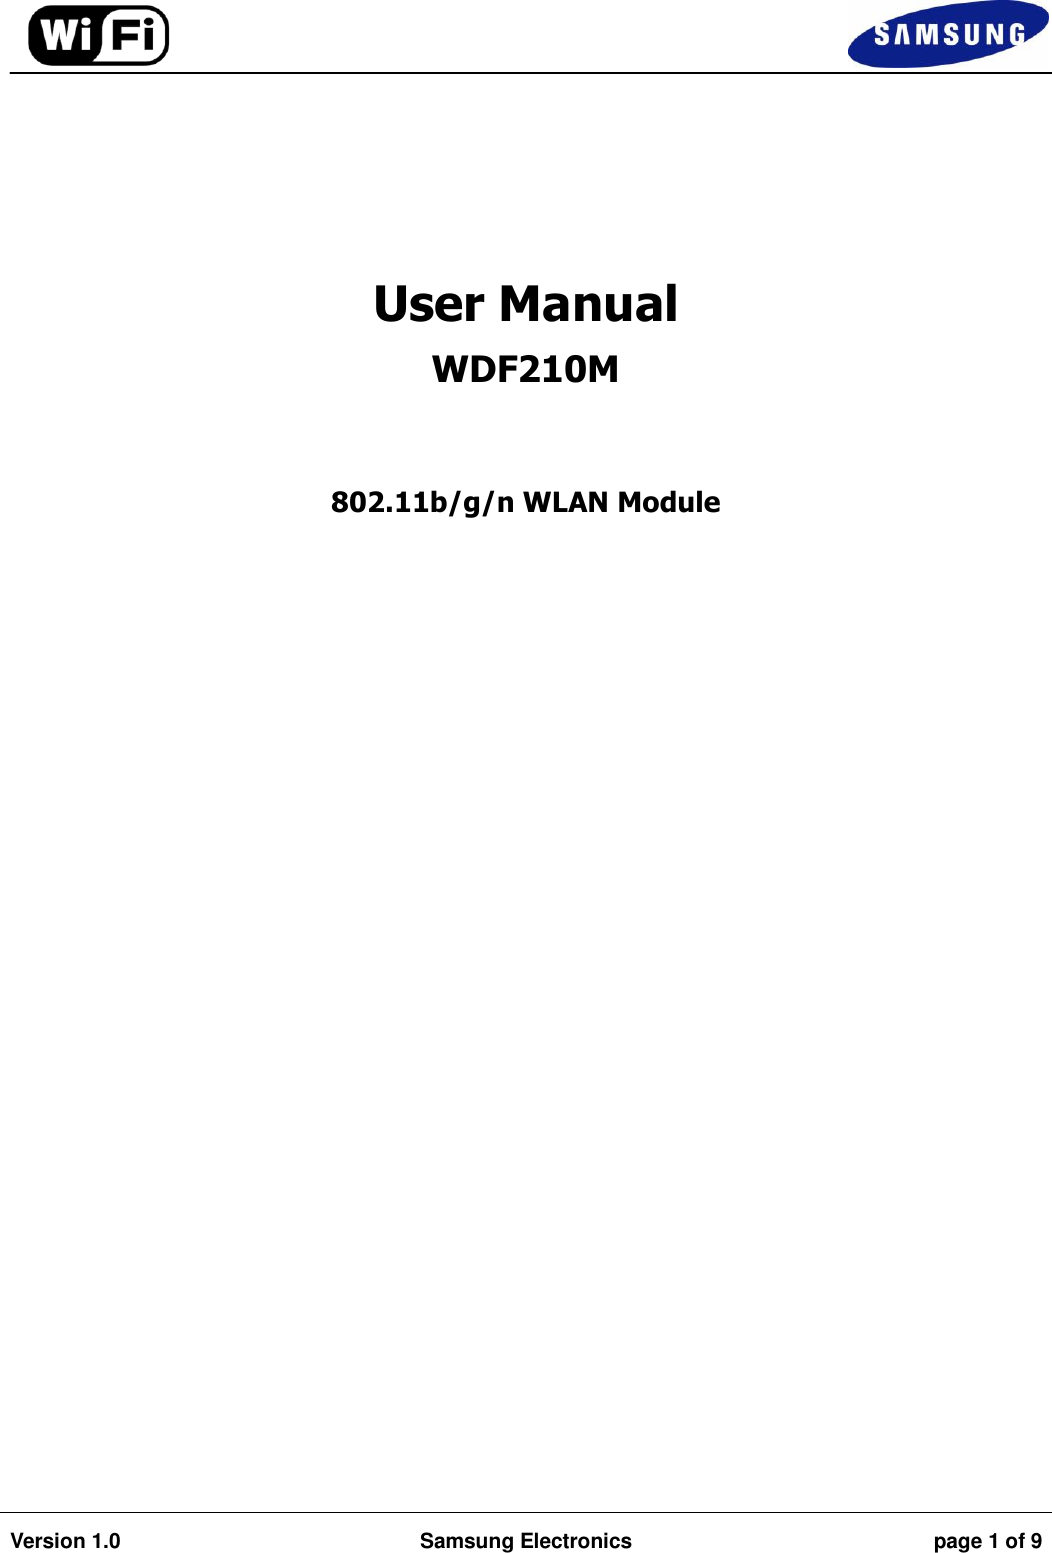                                                                                                                                         Version 1.0 Samsung Electronics page 1 of 9       User Manual WDF210M  802.11b/g/n WLAN Module       